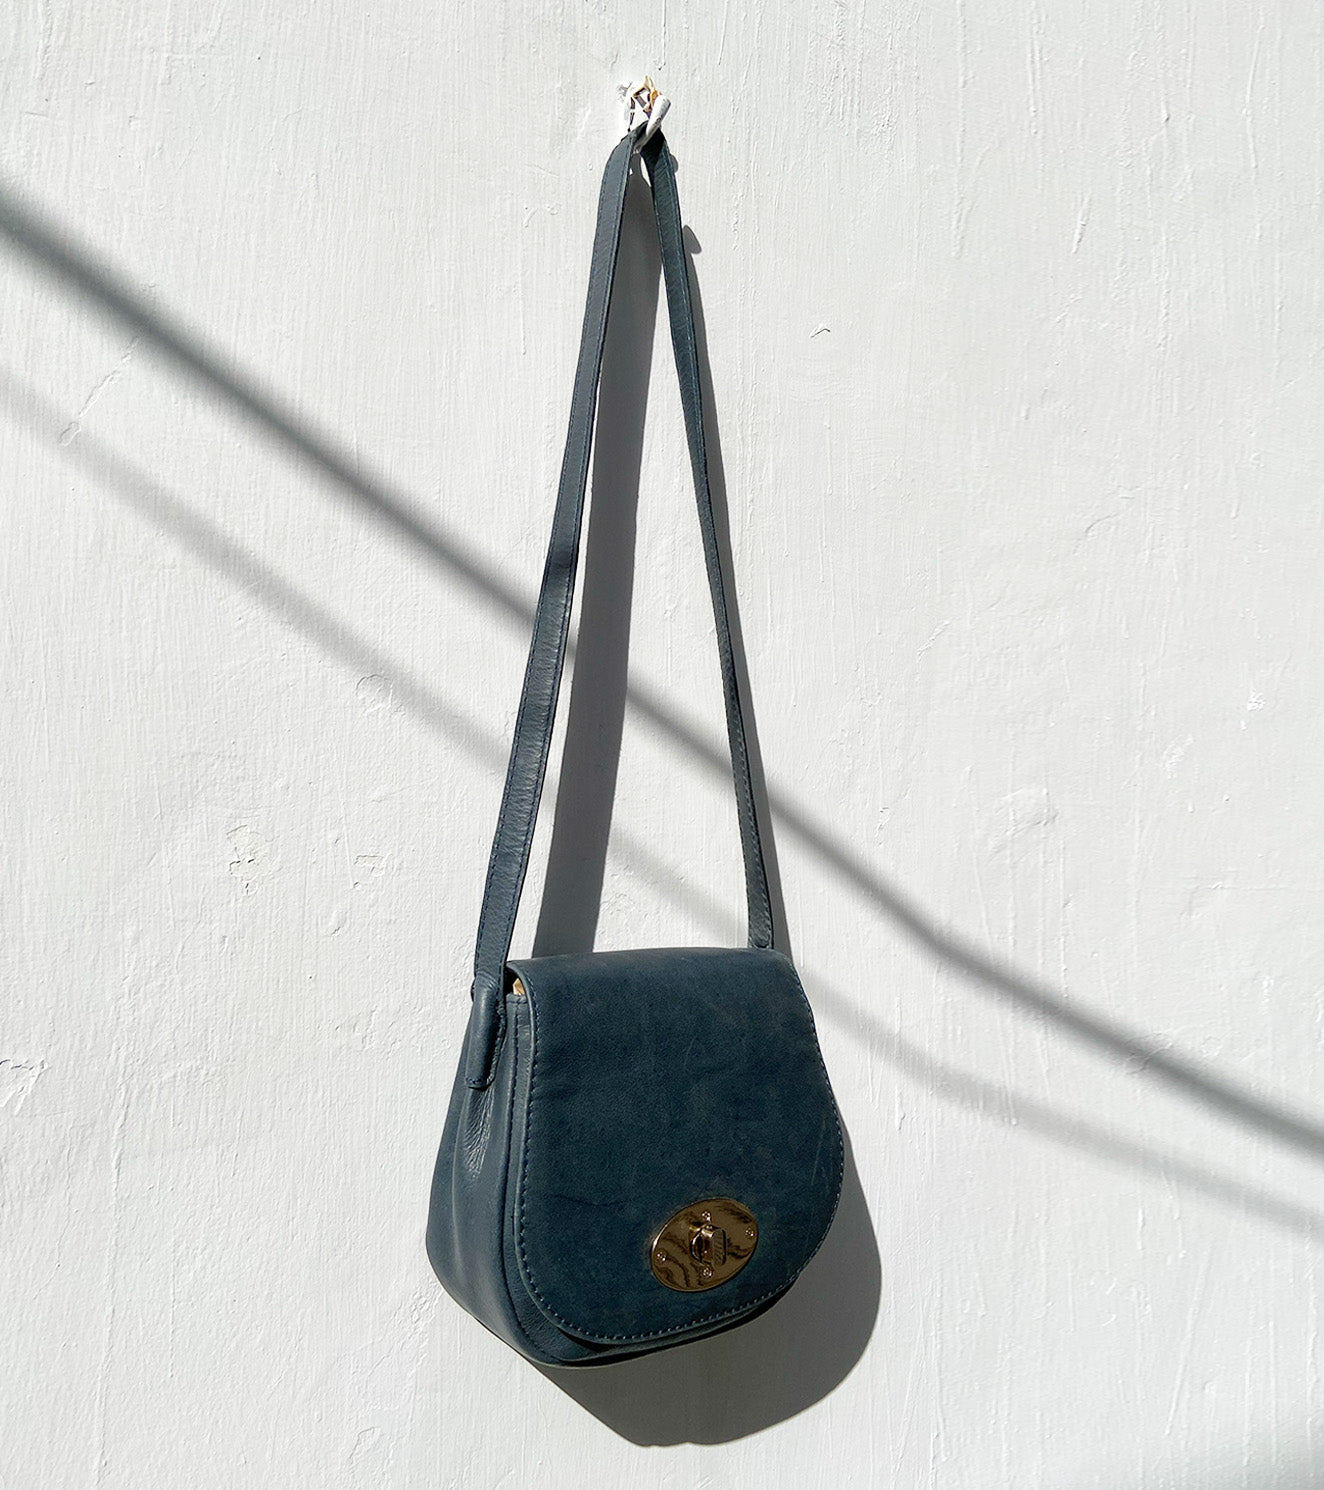 Blue teal sling